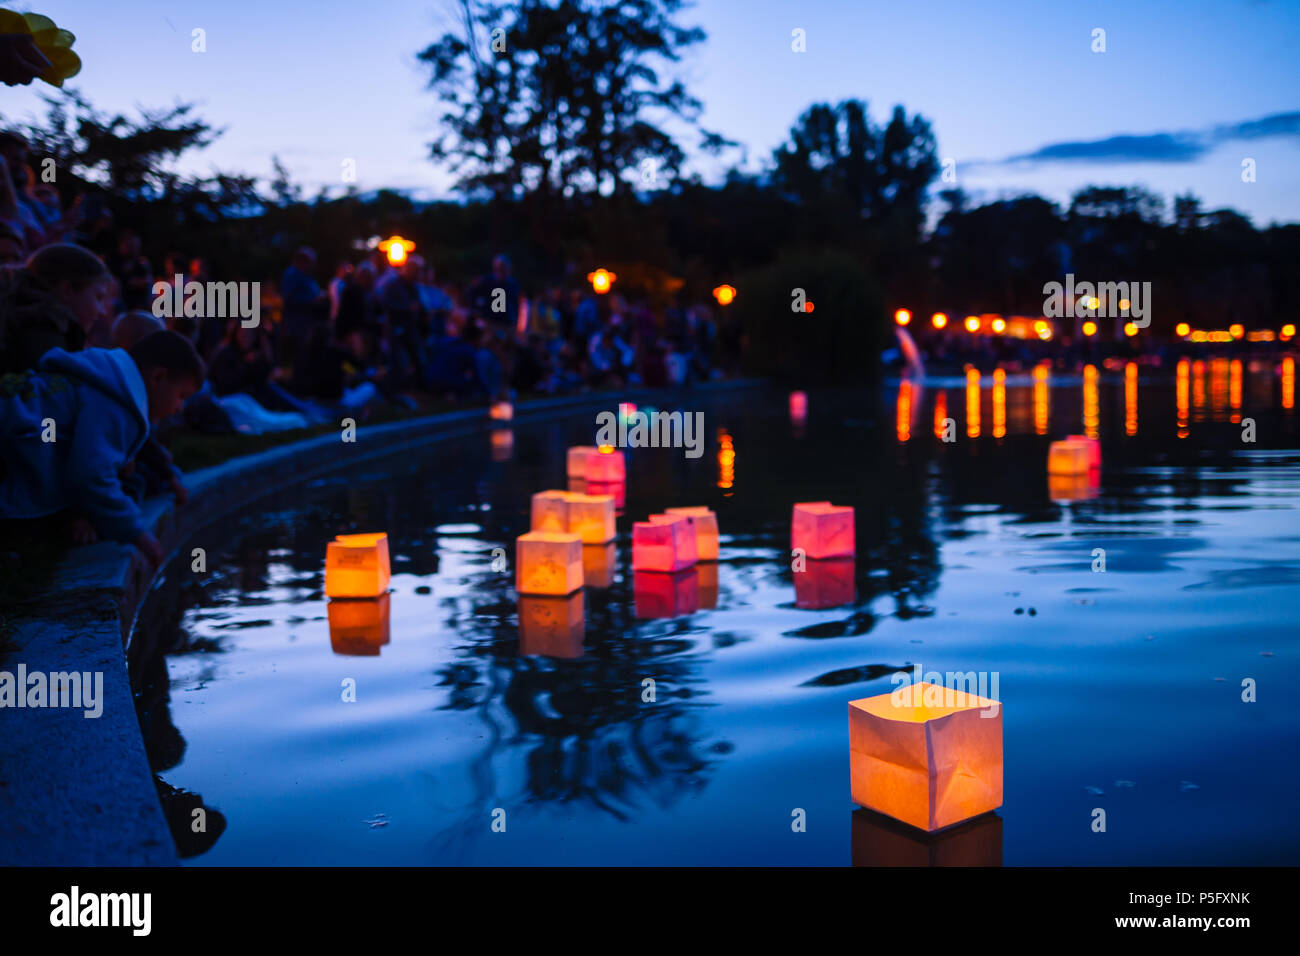 Gyömrő, Ungheria - 23 Jun 2018: persone si intendono le lanterne con candele accese sul lago sulla notte d'estate. Foto Stock